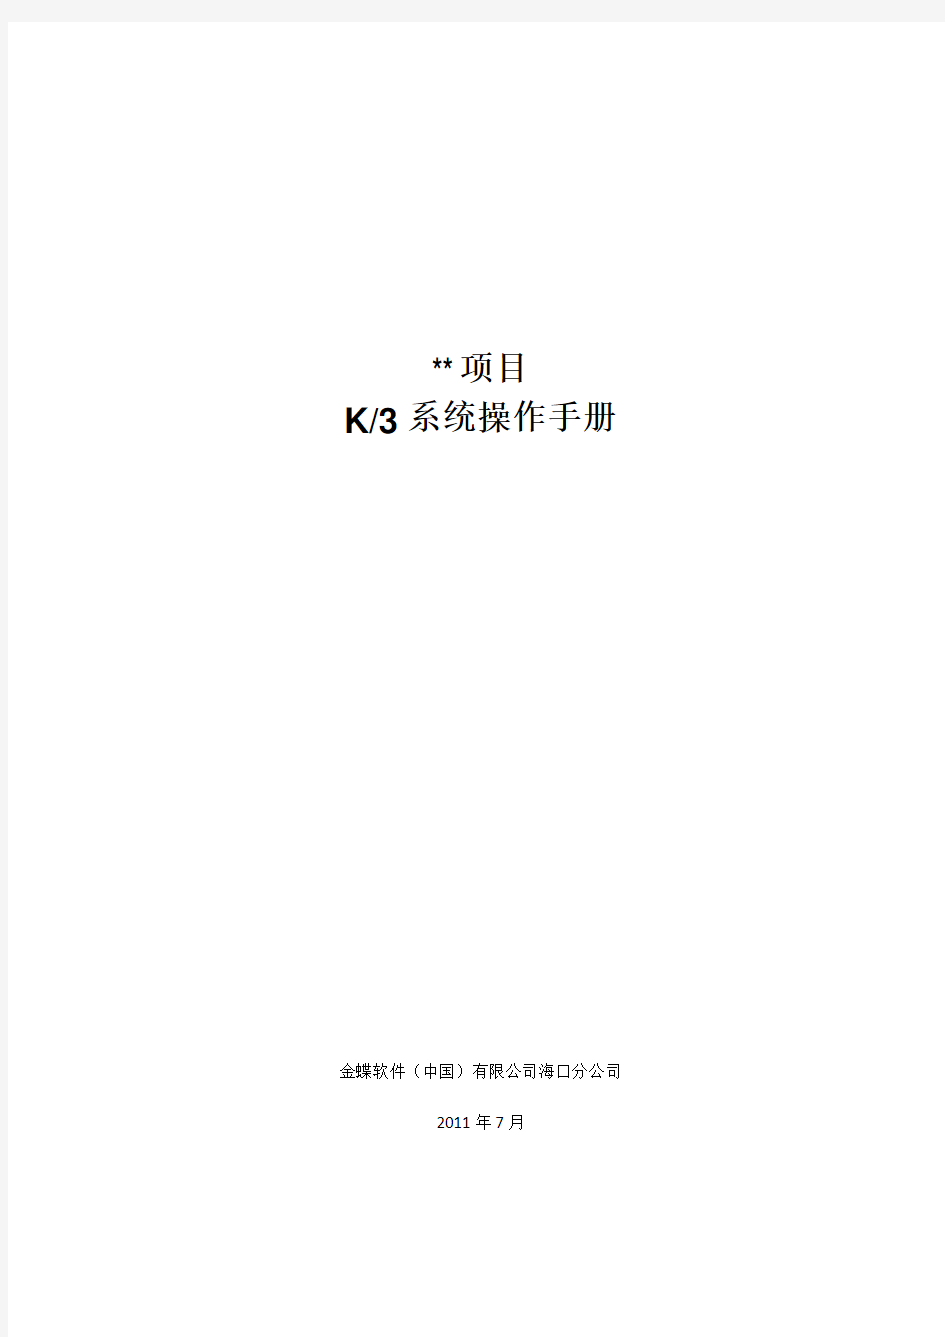 金蝶K3系统操作手册1.0